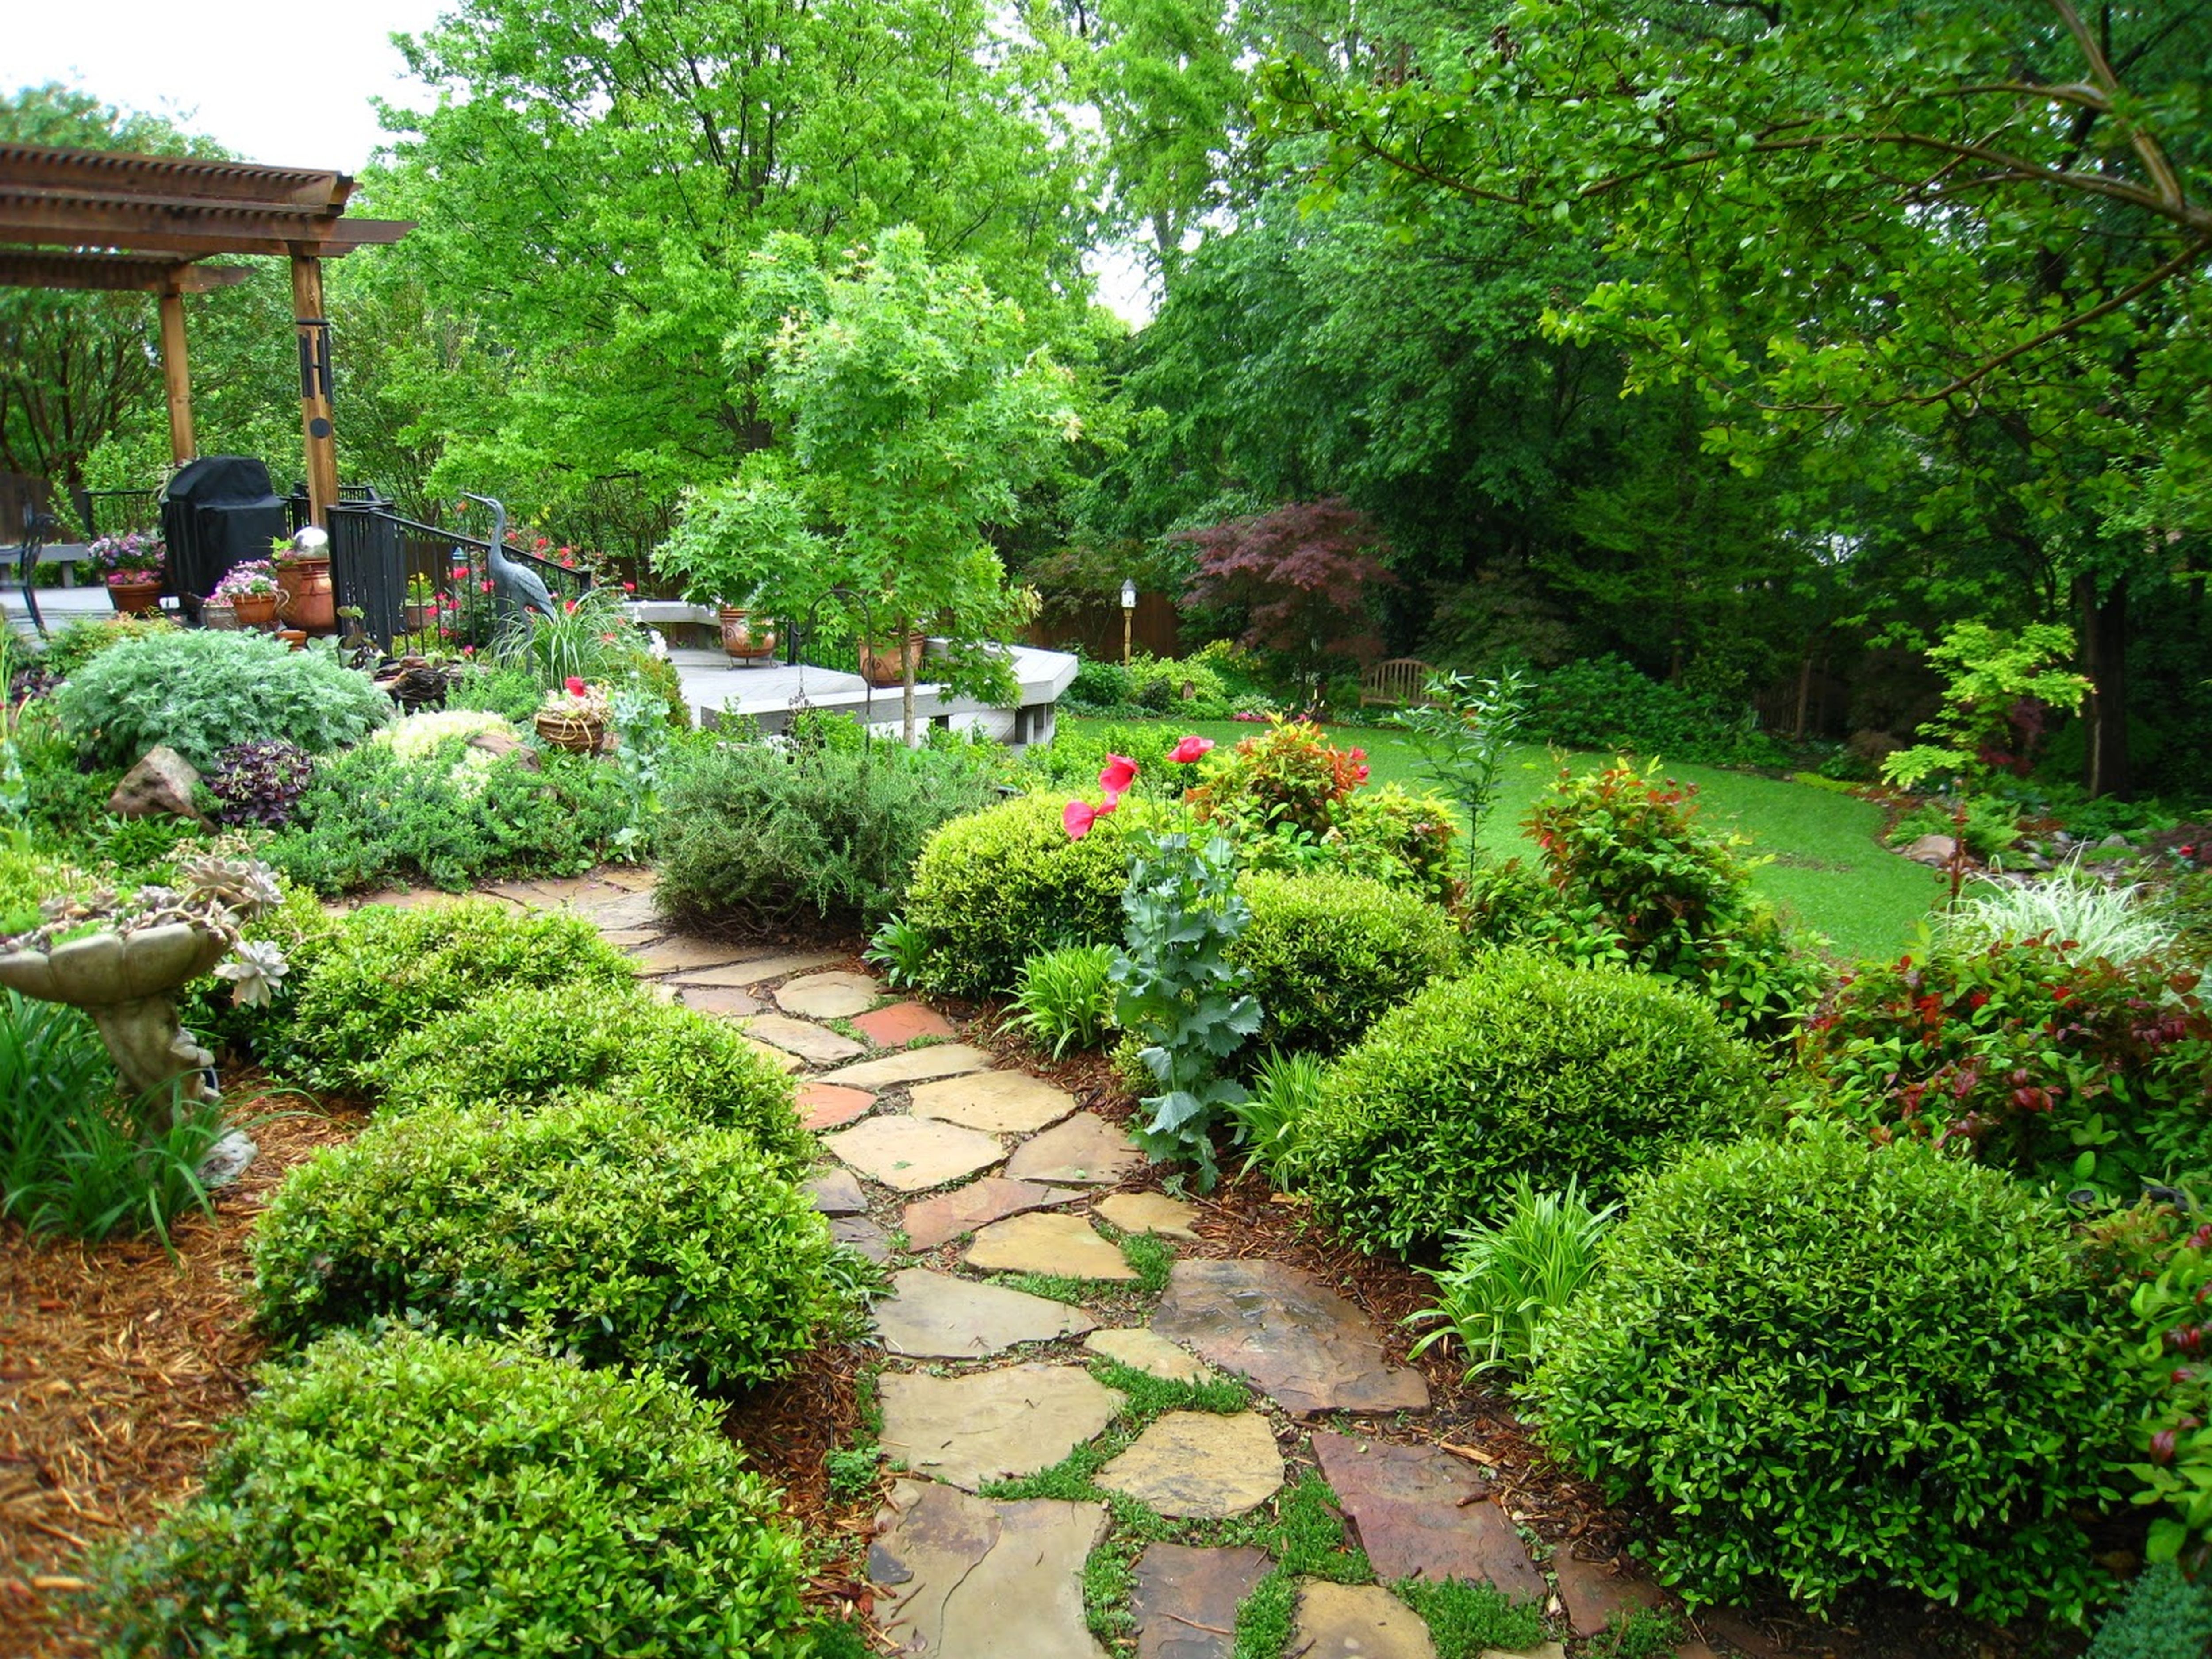  home garden landscape designs